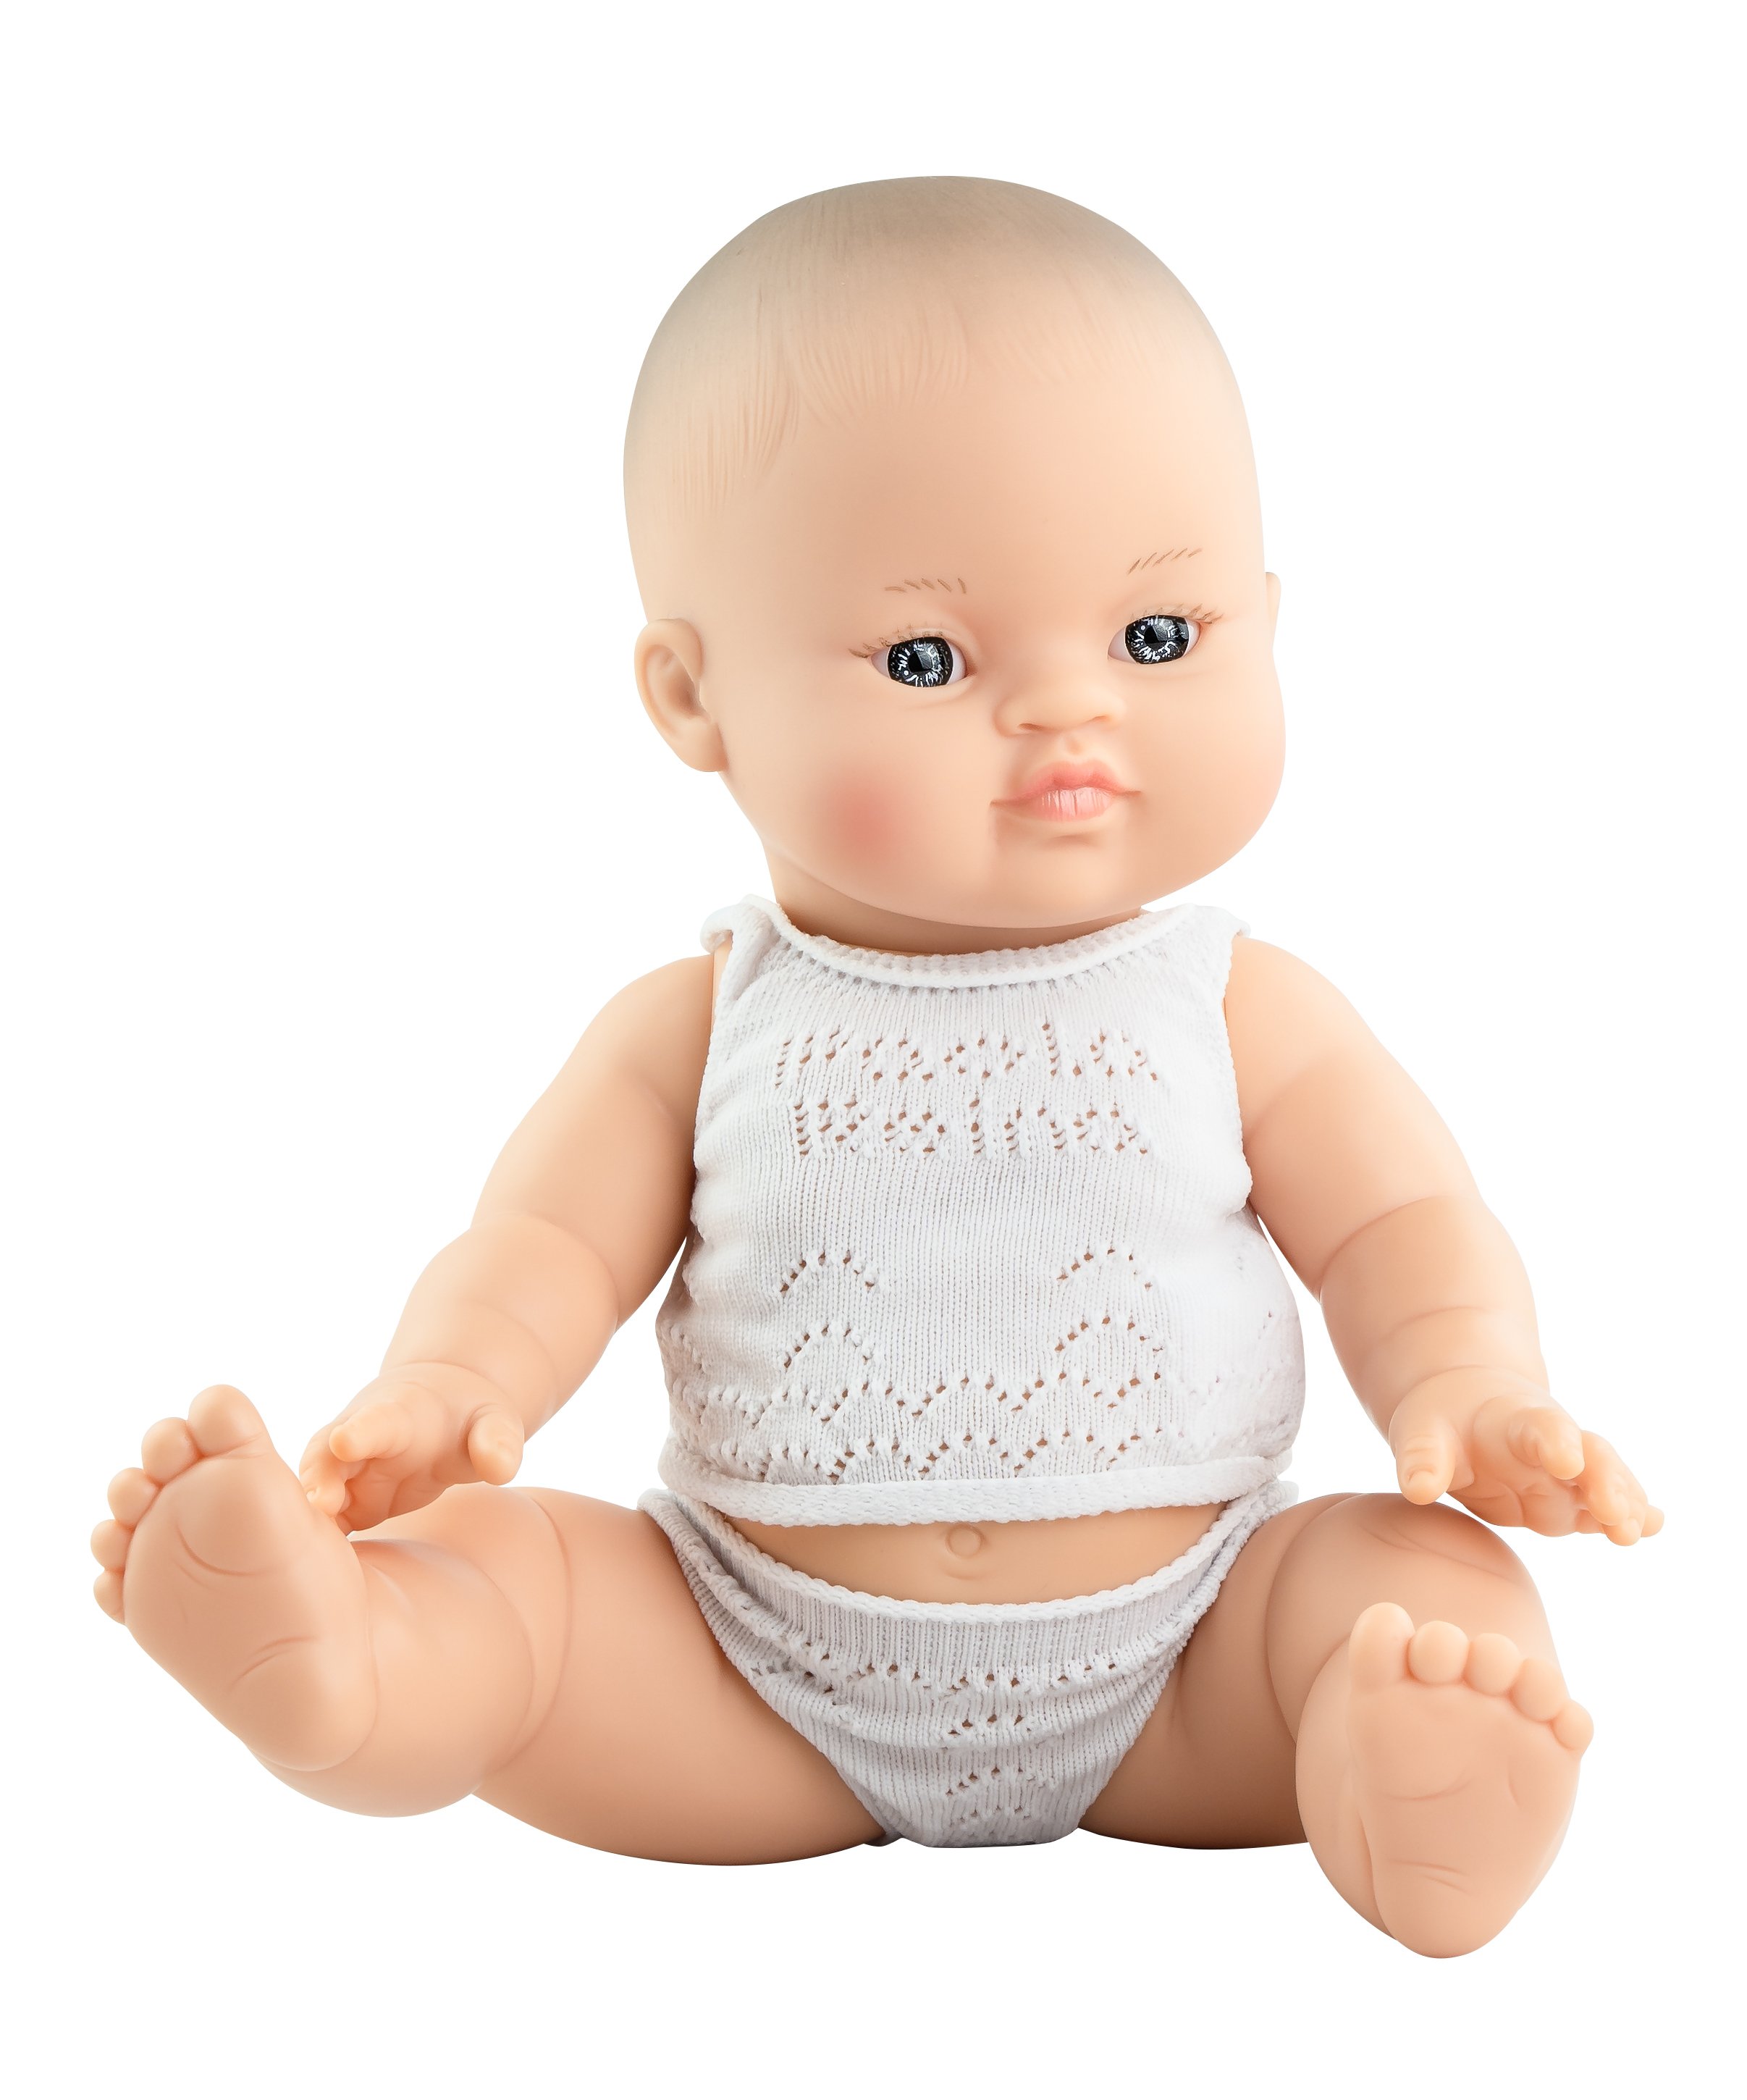 Paola Reina Кукла Горди в нижнем белье, 34 см, азиатка, в пакете, арт. 34005